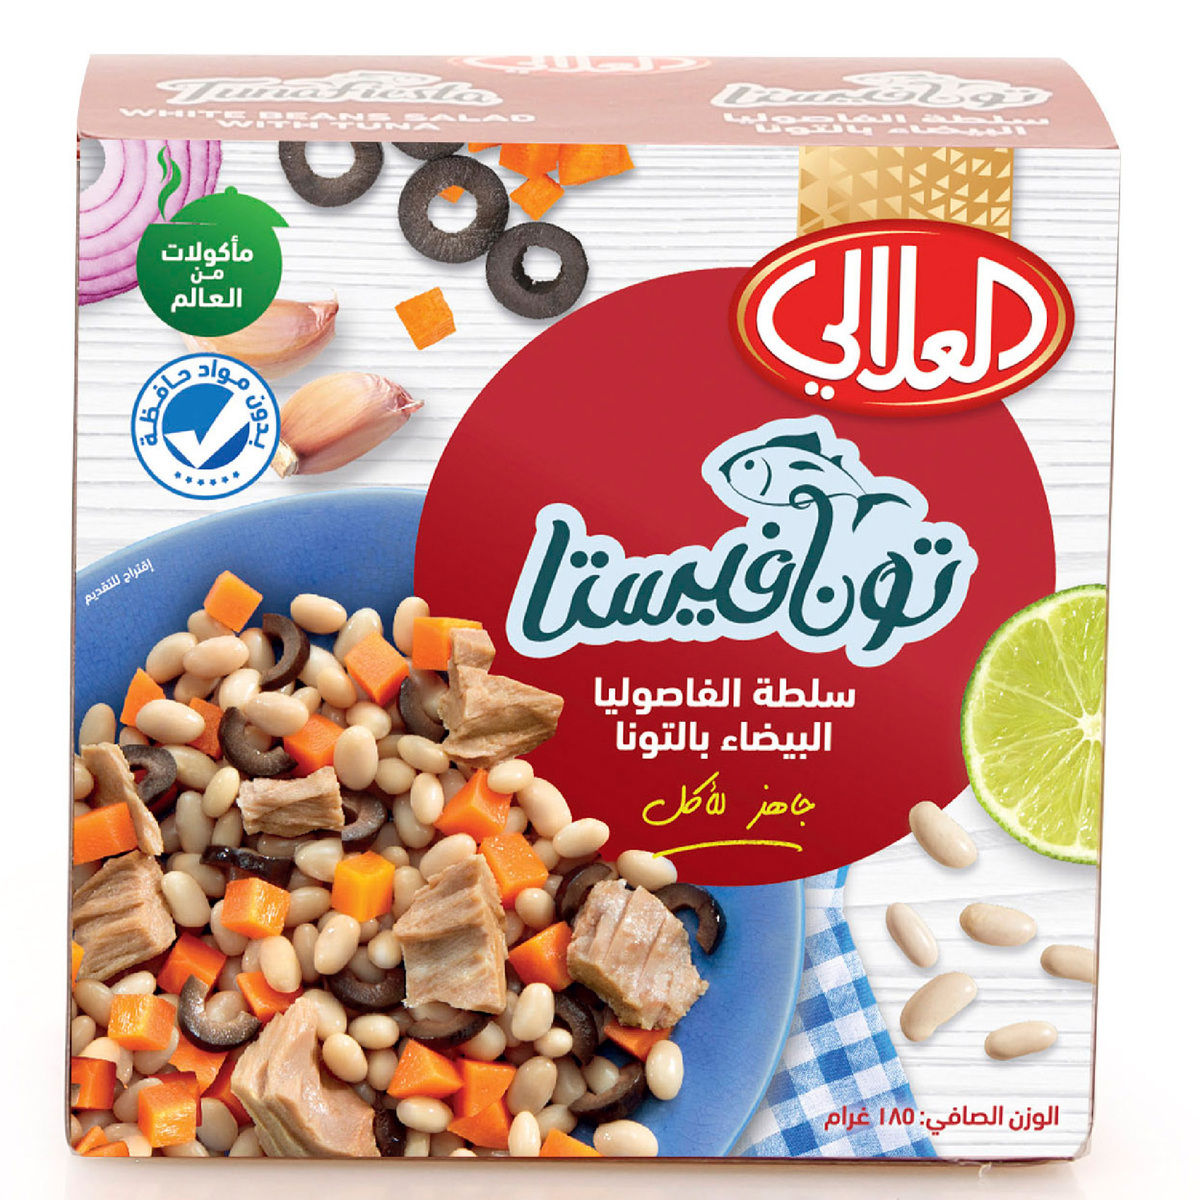 Al Alali Tunafiesta White Beans Salad With Tuna 185 g